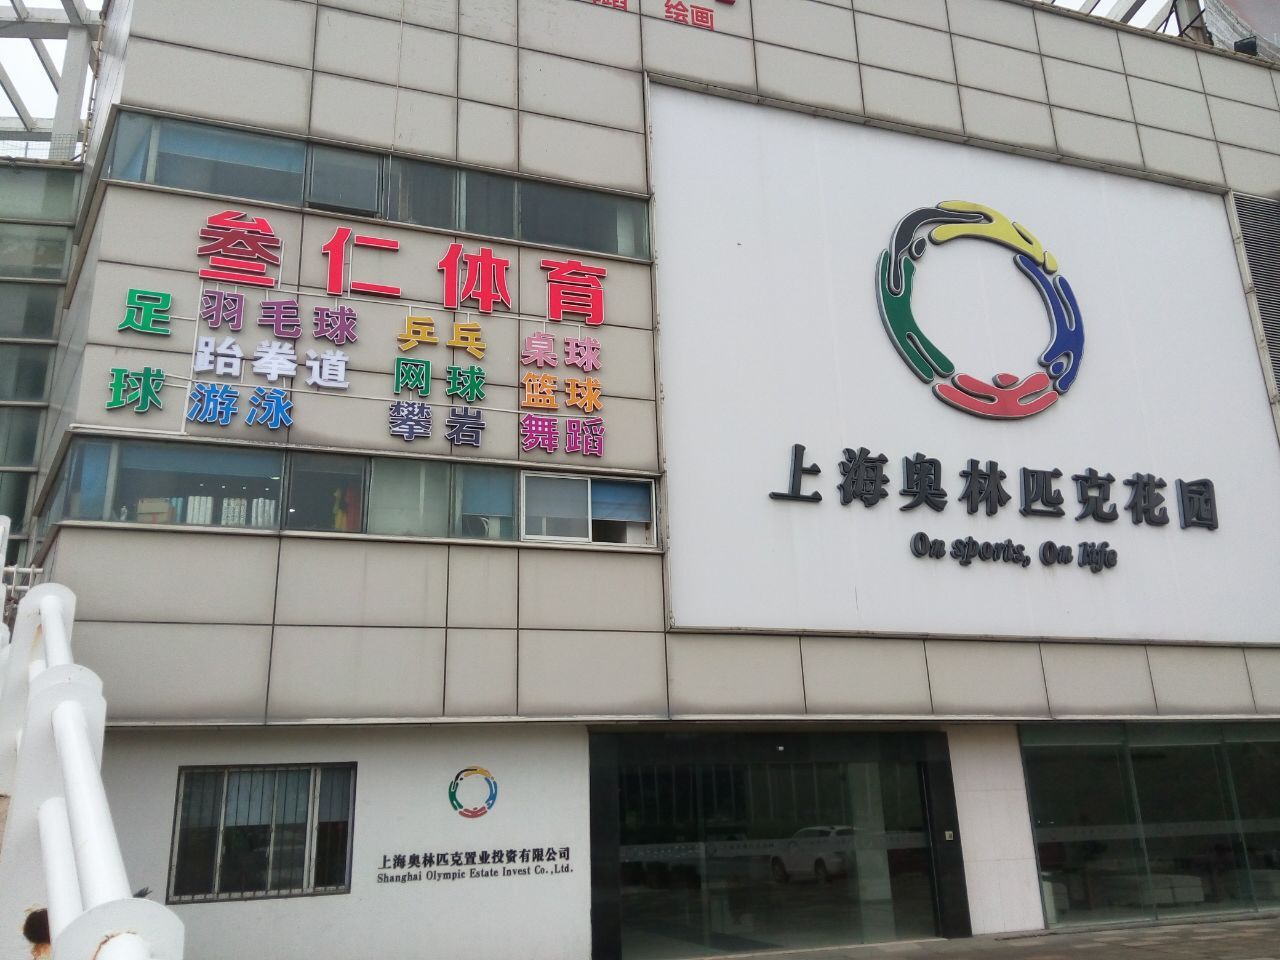 上海叁仁体育中心桌球预订